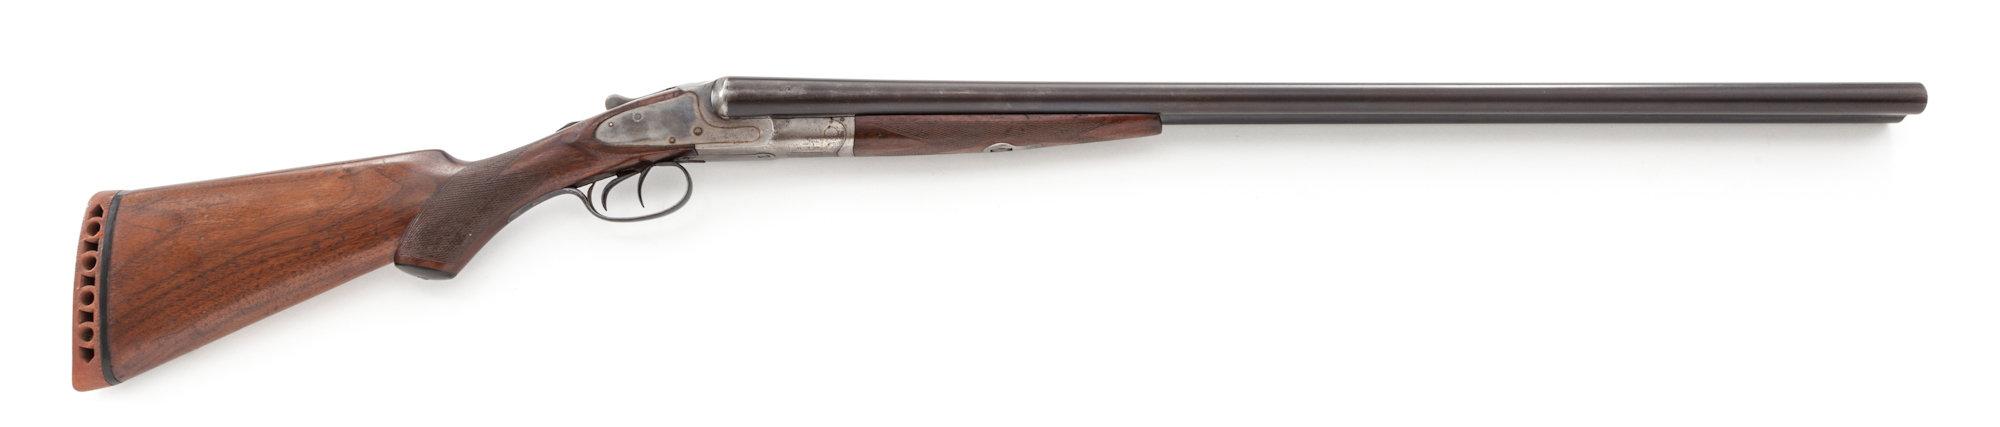 L.C. Smith Field Grade SxS Hammerless Shotgun